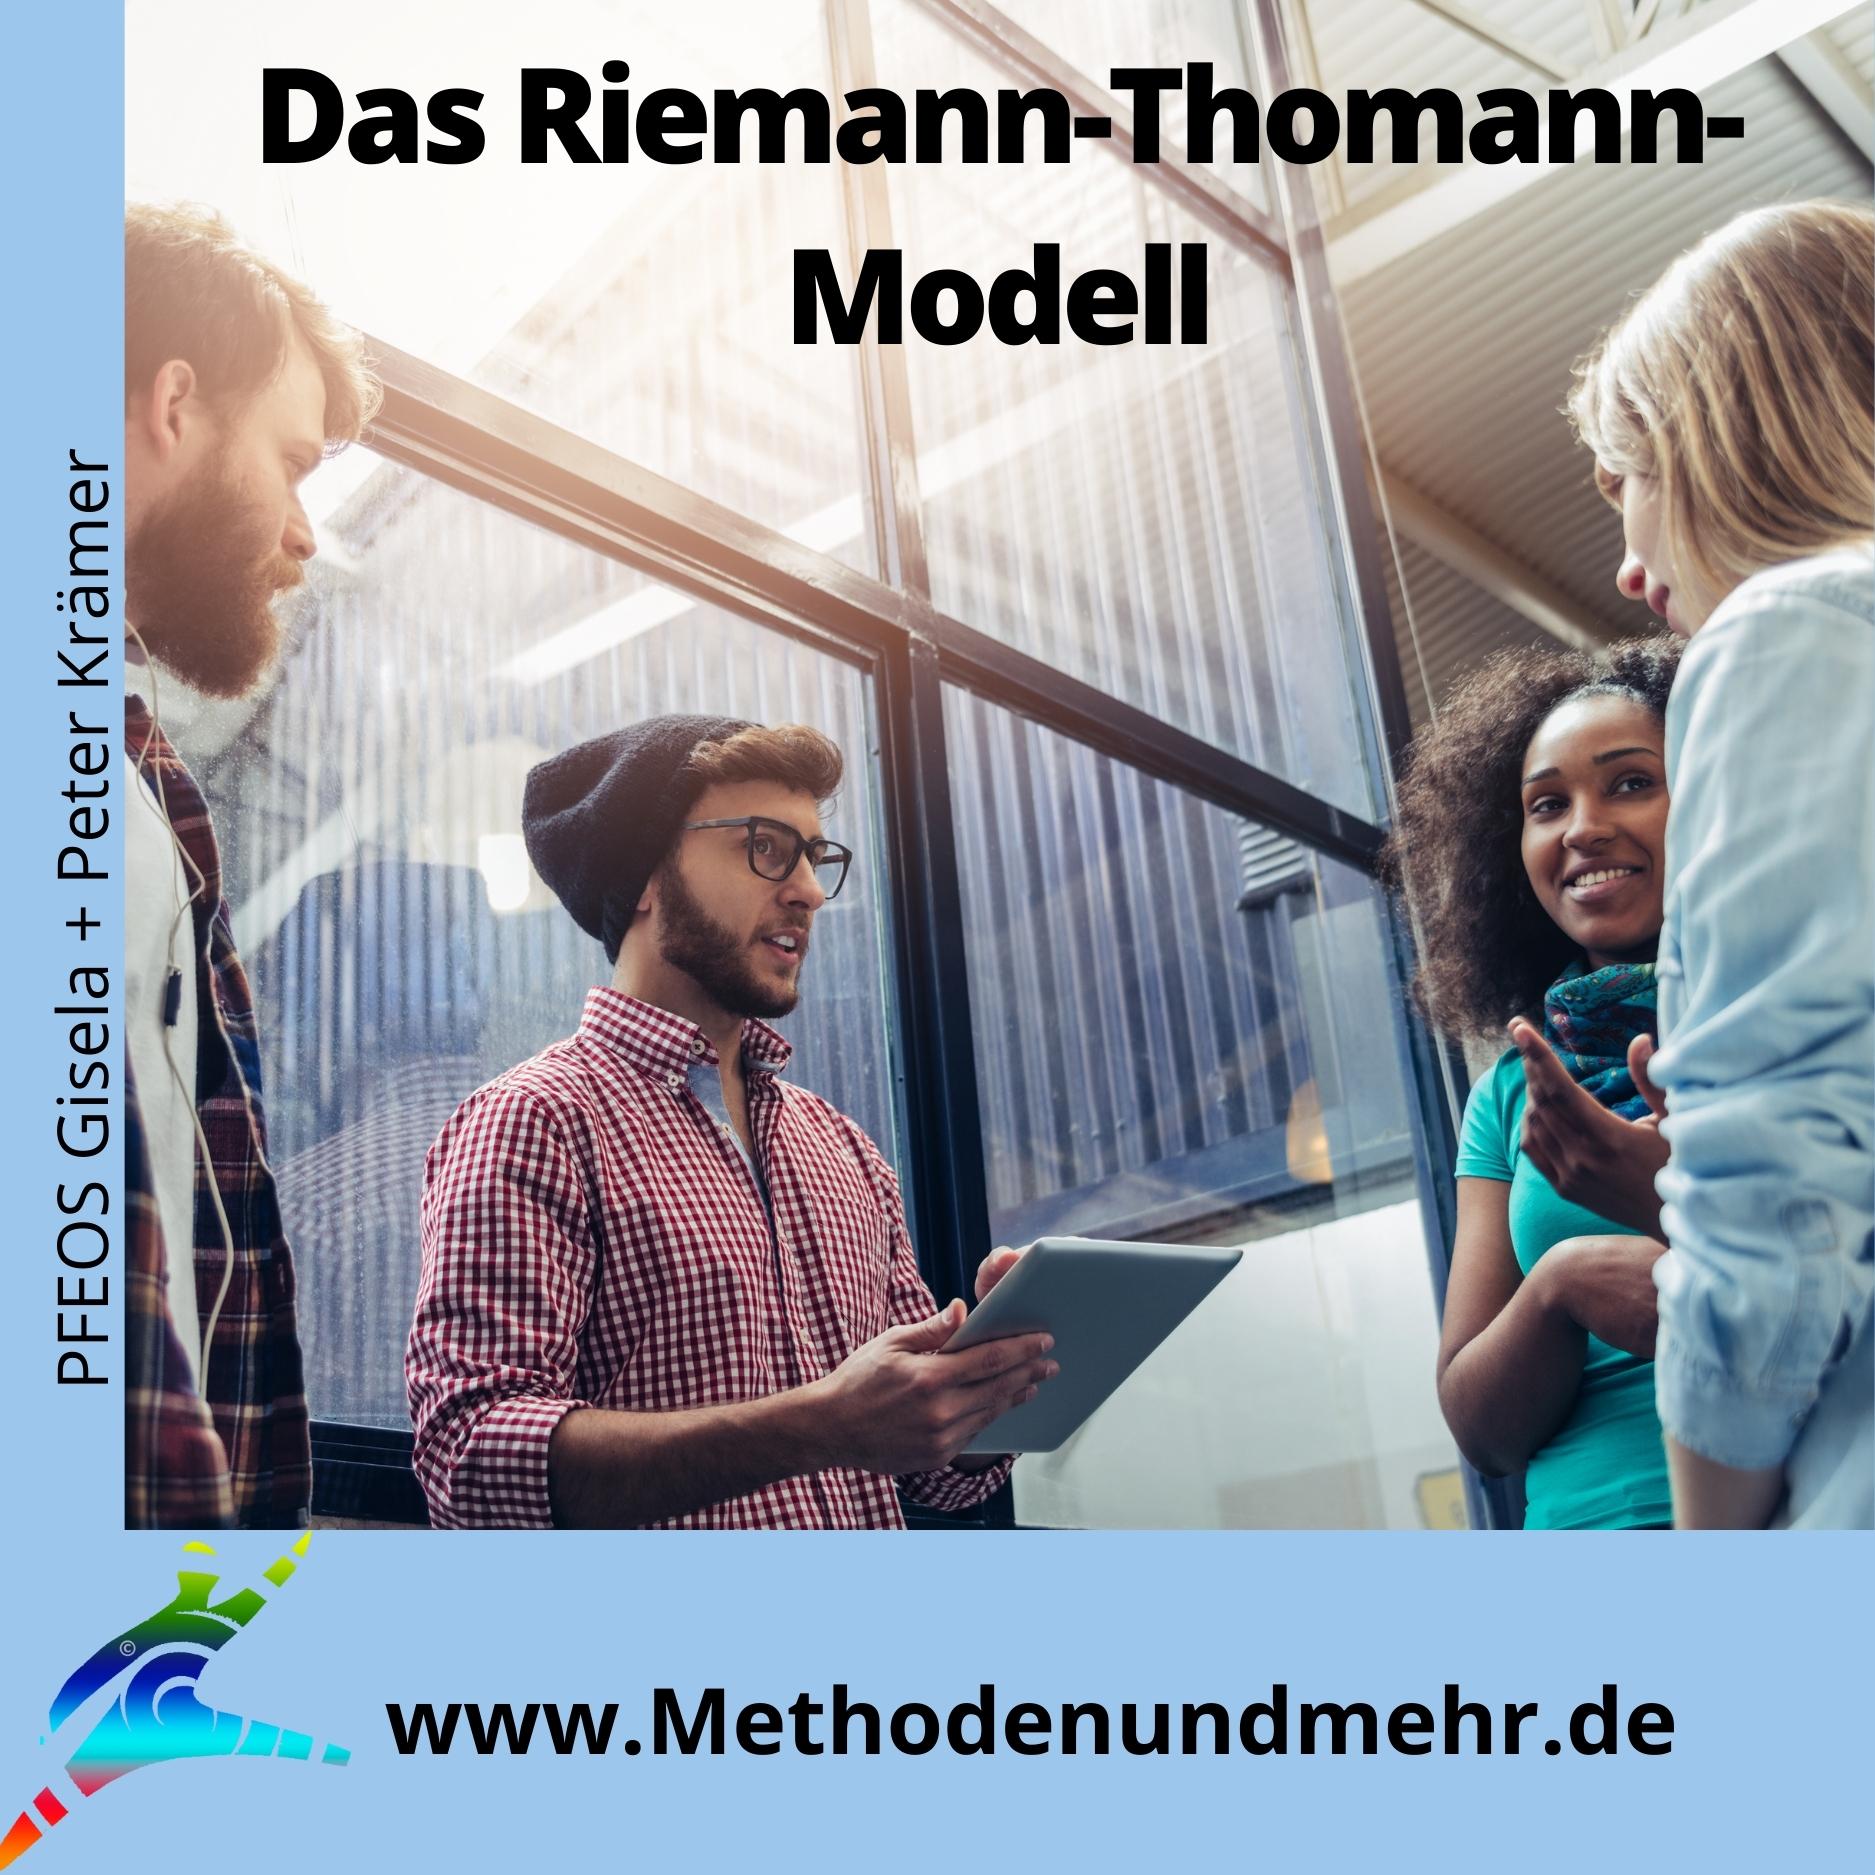 Das Riemann-Thomann-Modell